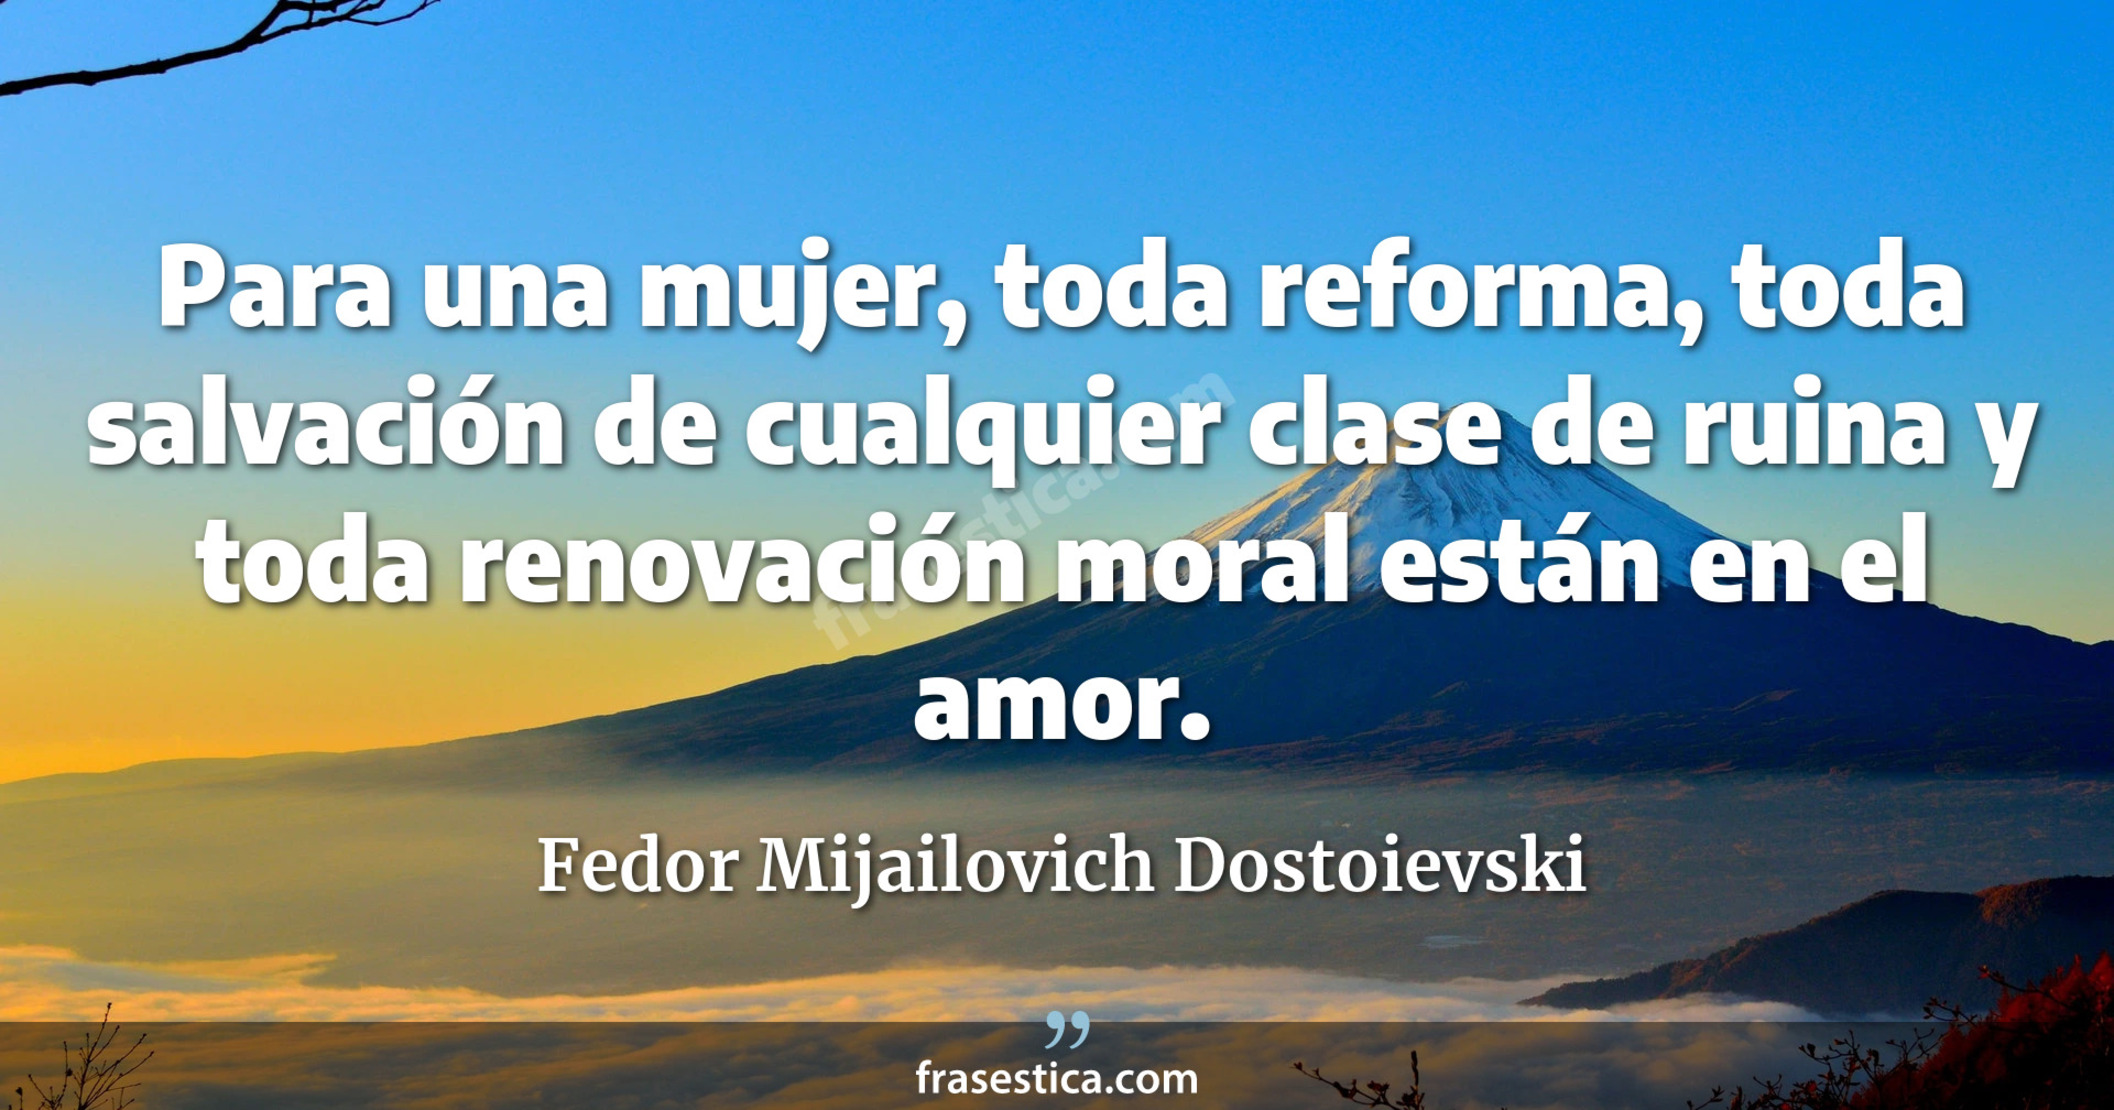 Para una mujer, toda reforma, toda salvación de cualquier clase de ruina y toda renovación moral están en el amor. - Fedor Mijailovich Dostoievski